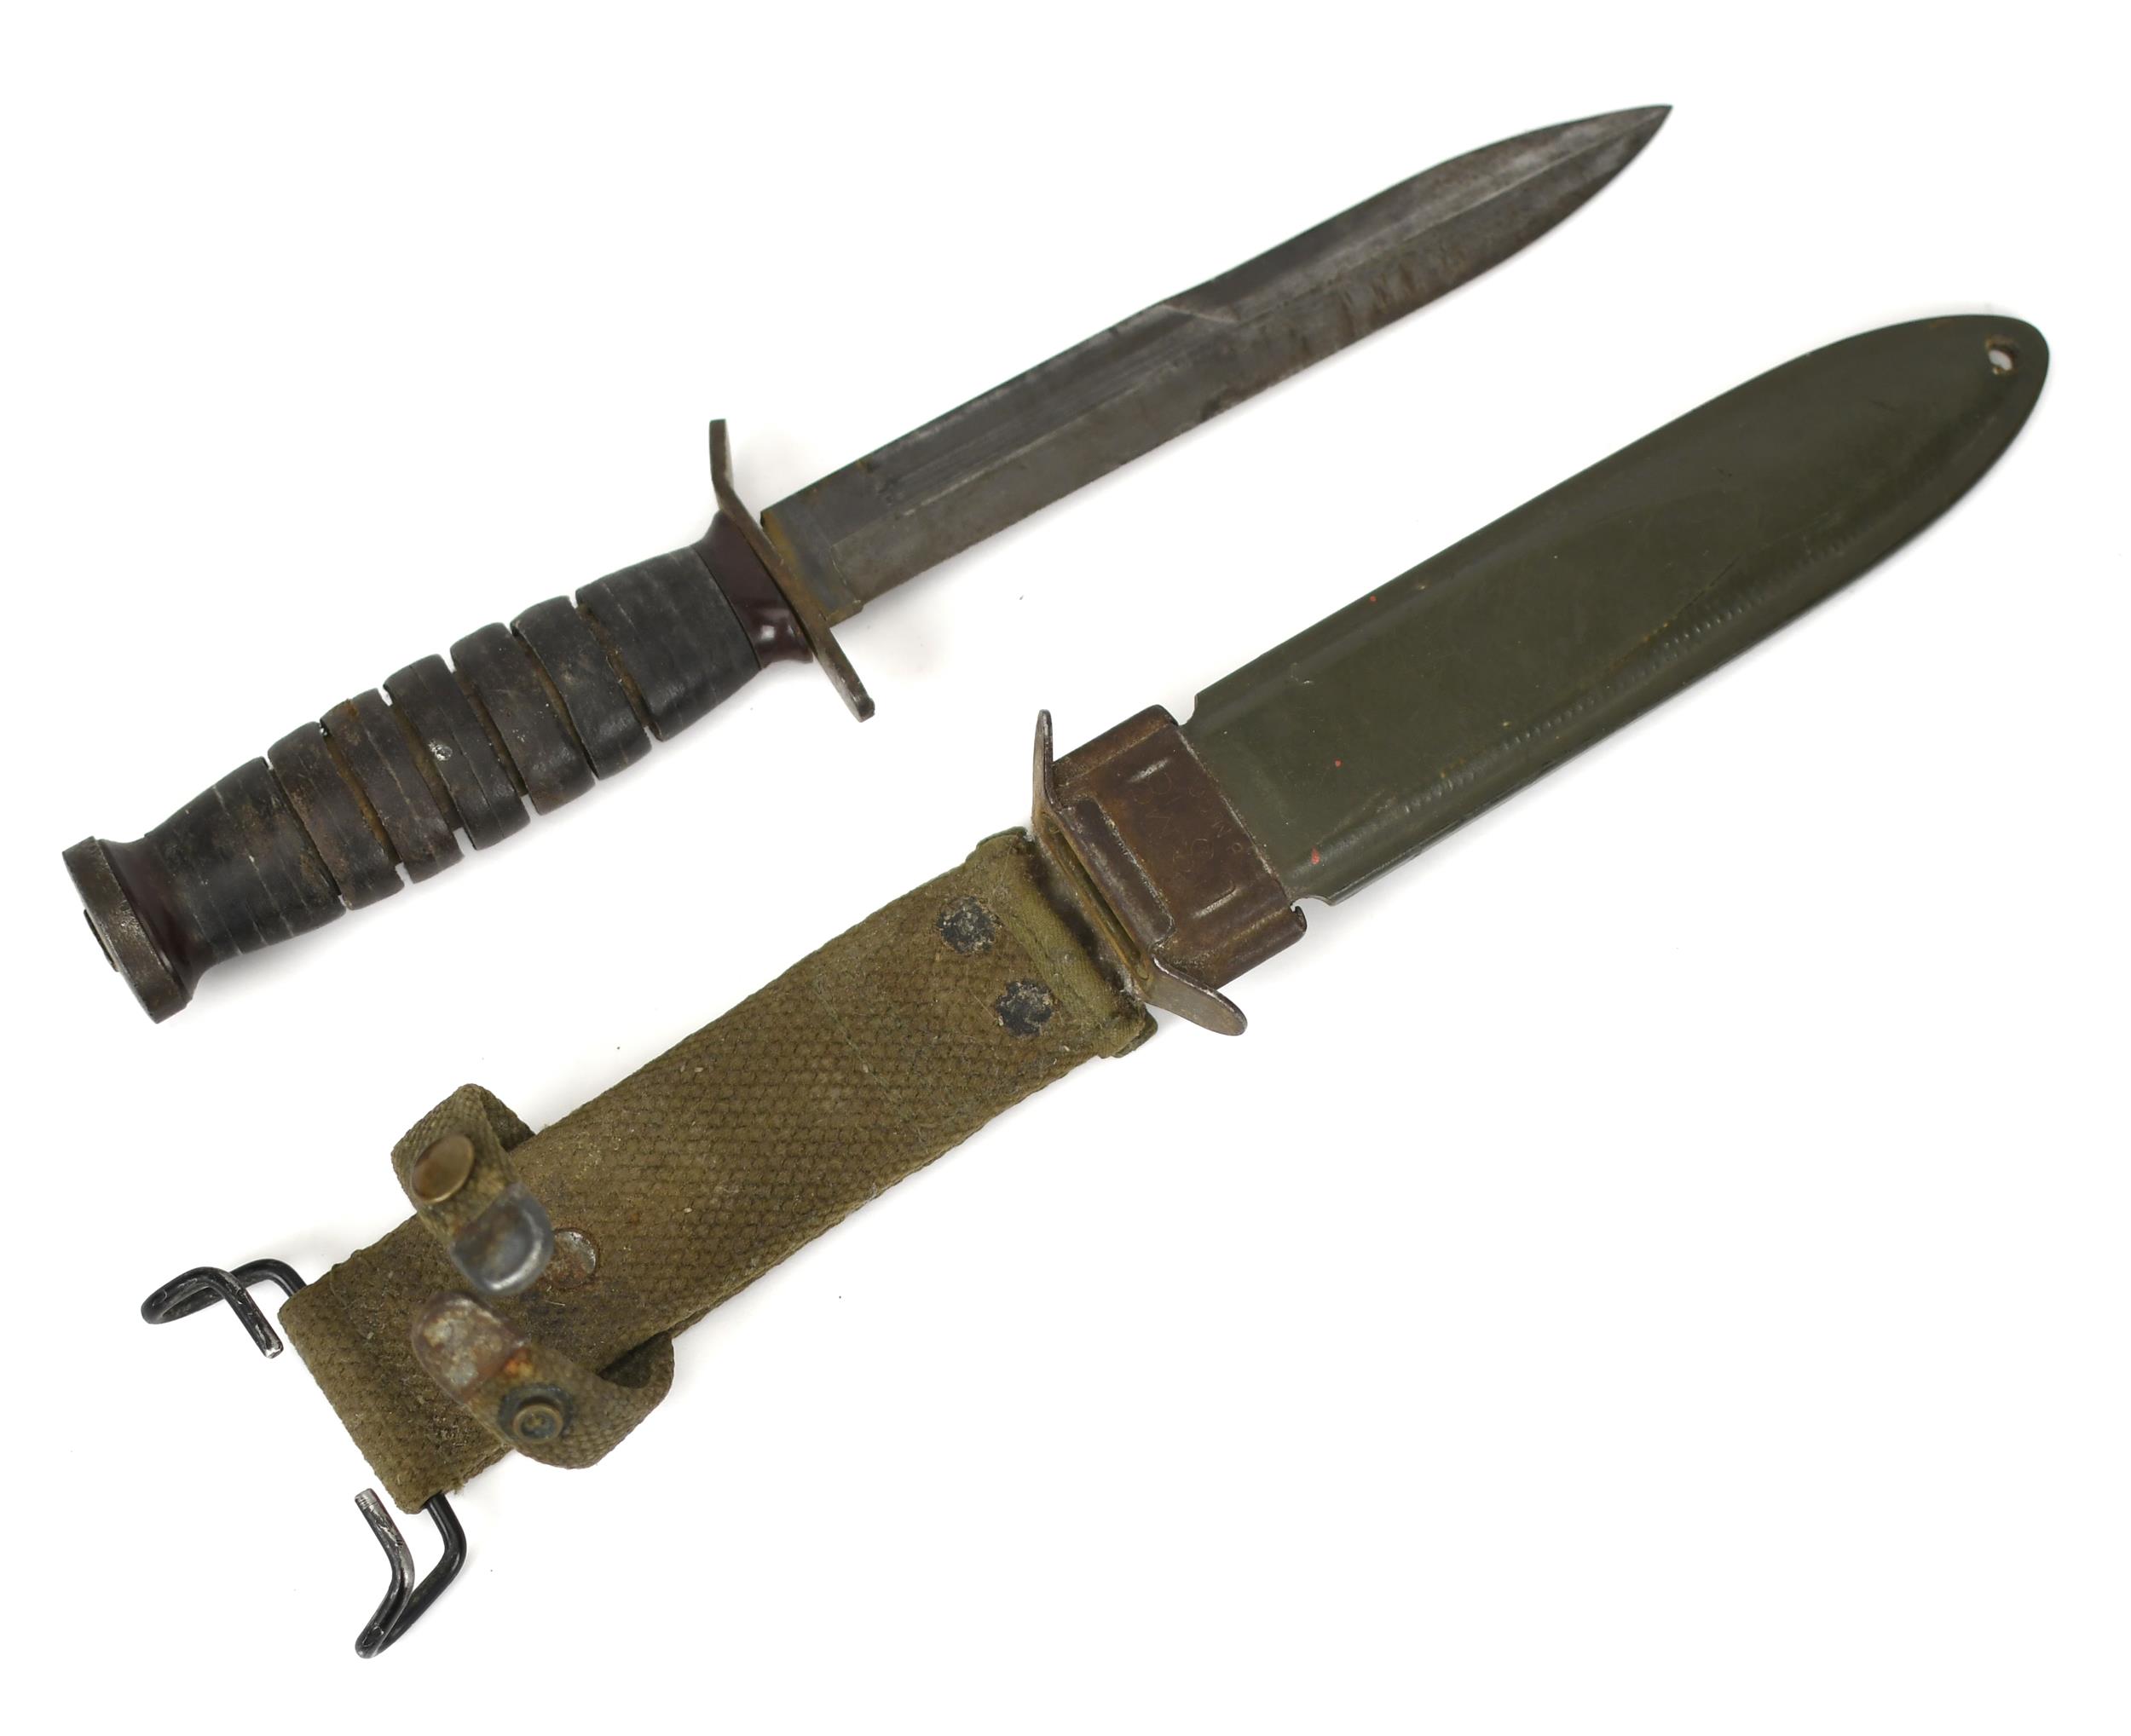 WWII USM8 KNIFE WITH SHEATH. WWII